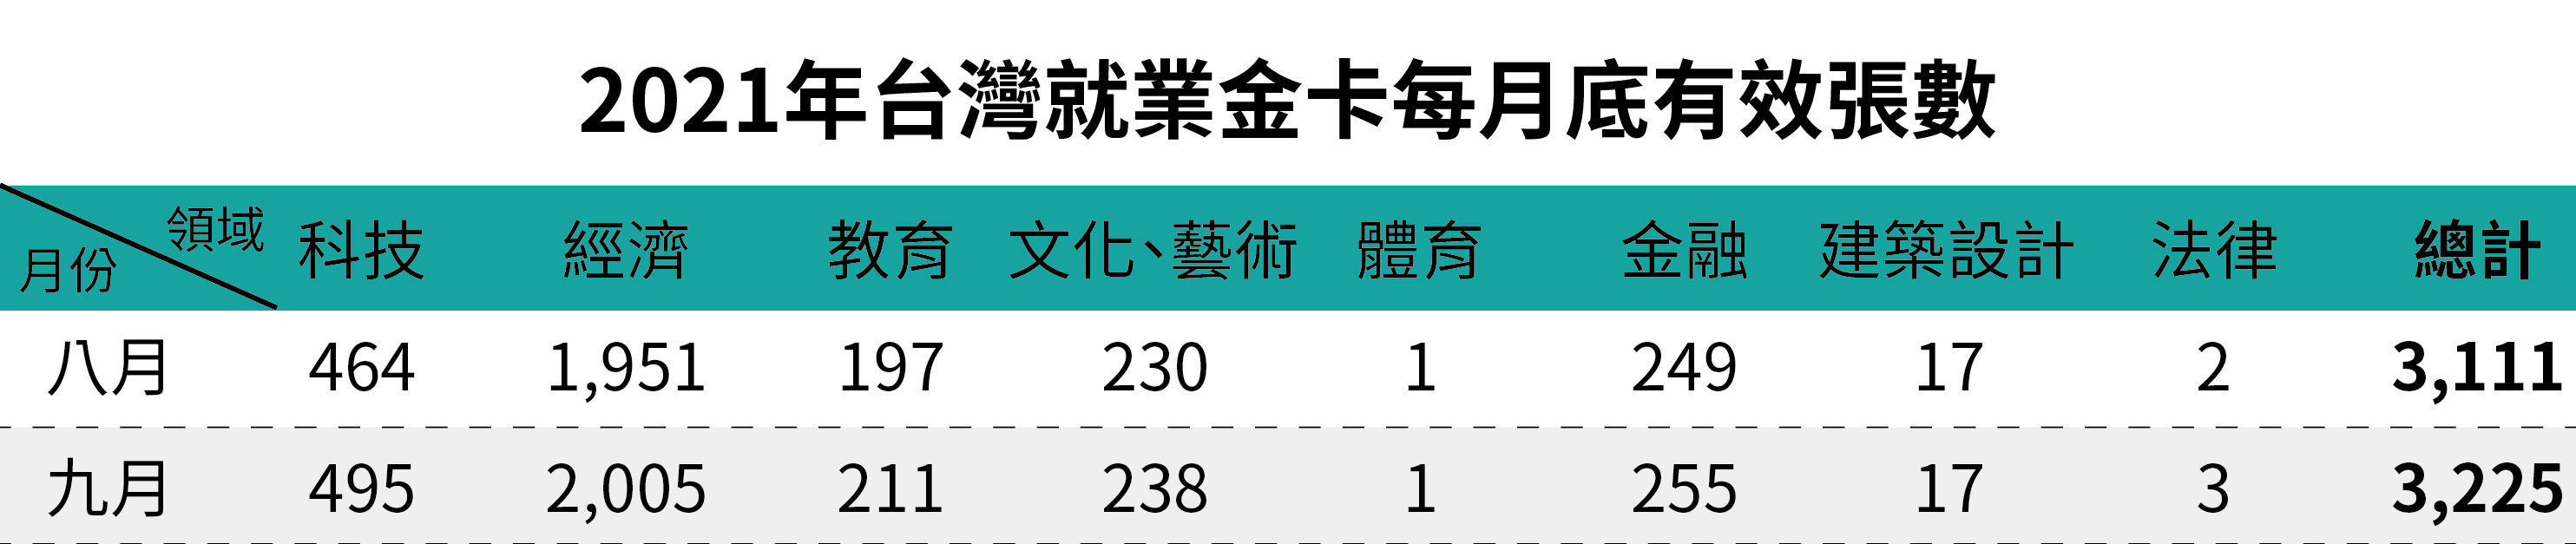 2021年台灣就業金卡每月底有效張數-九月